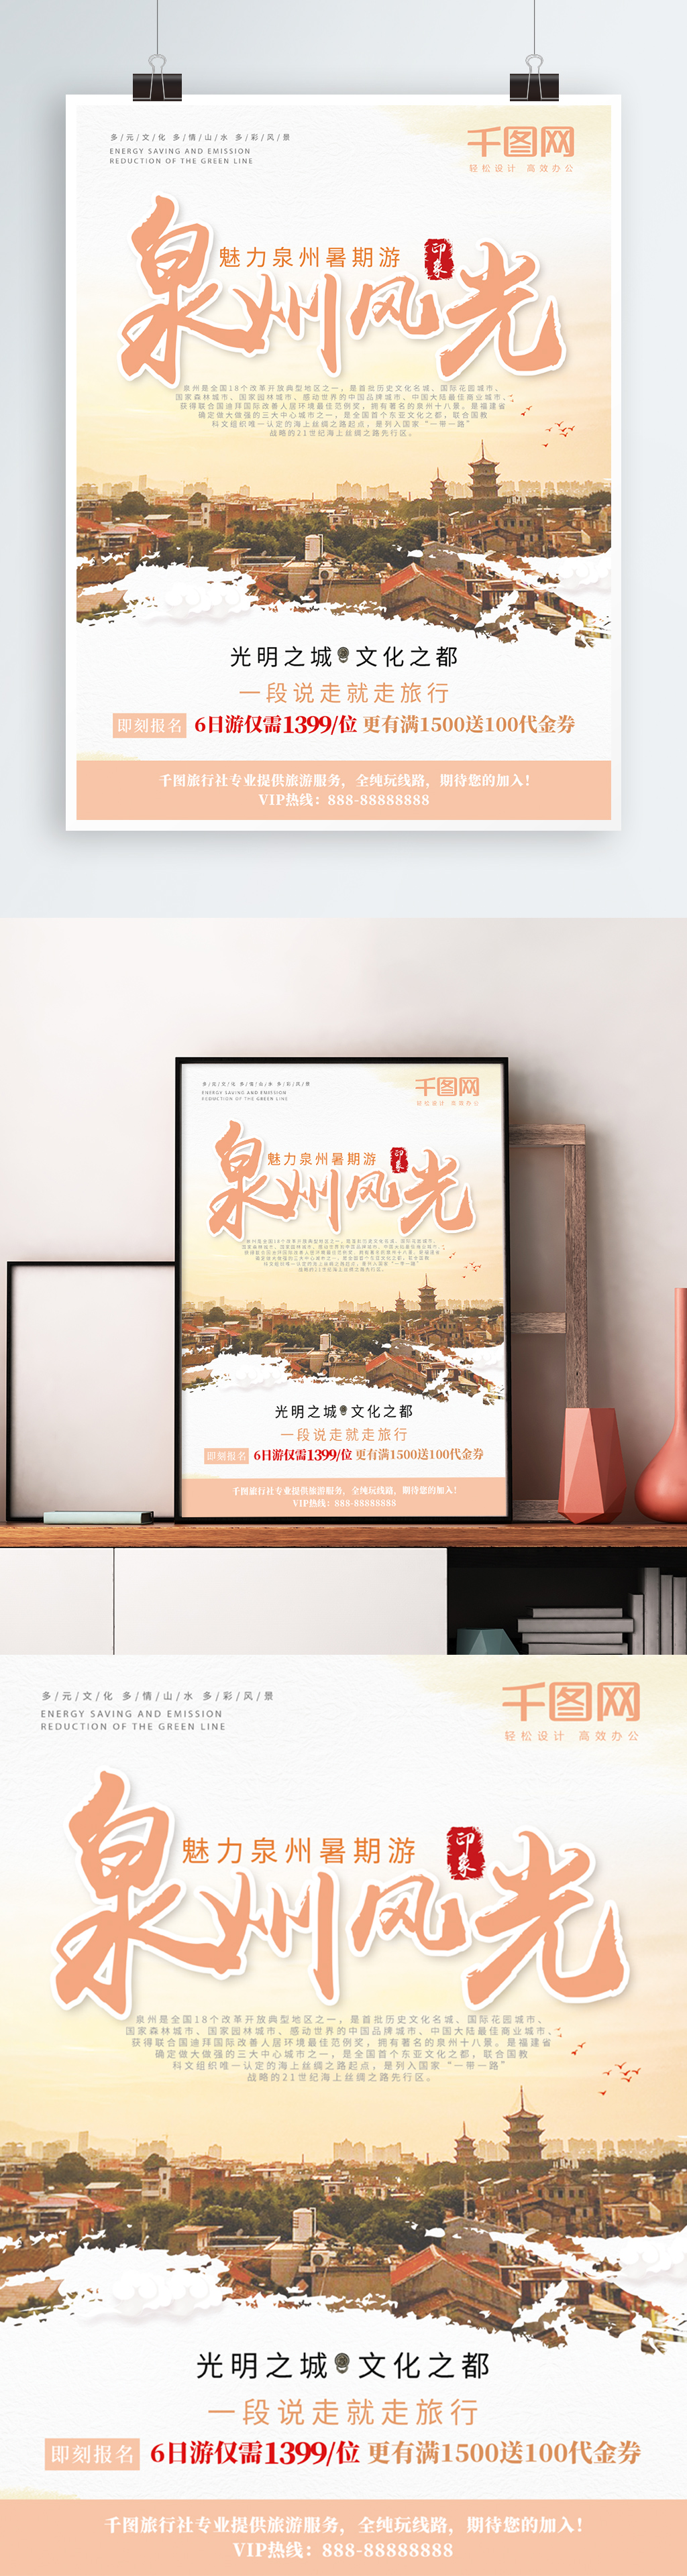 黄昏色系泉州风光泉州旅游宣传海报图片